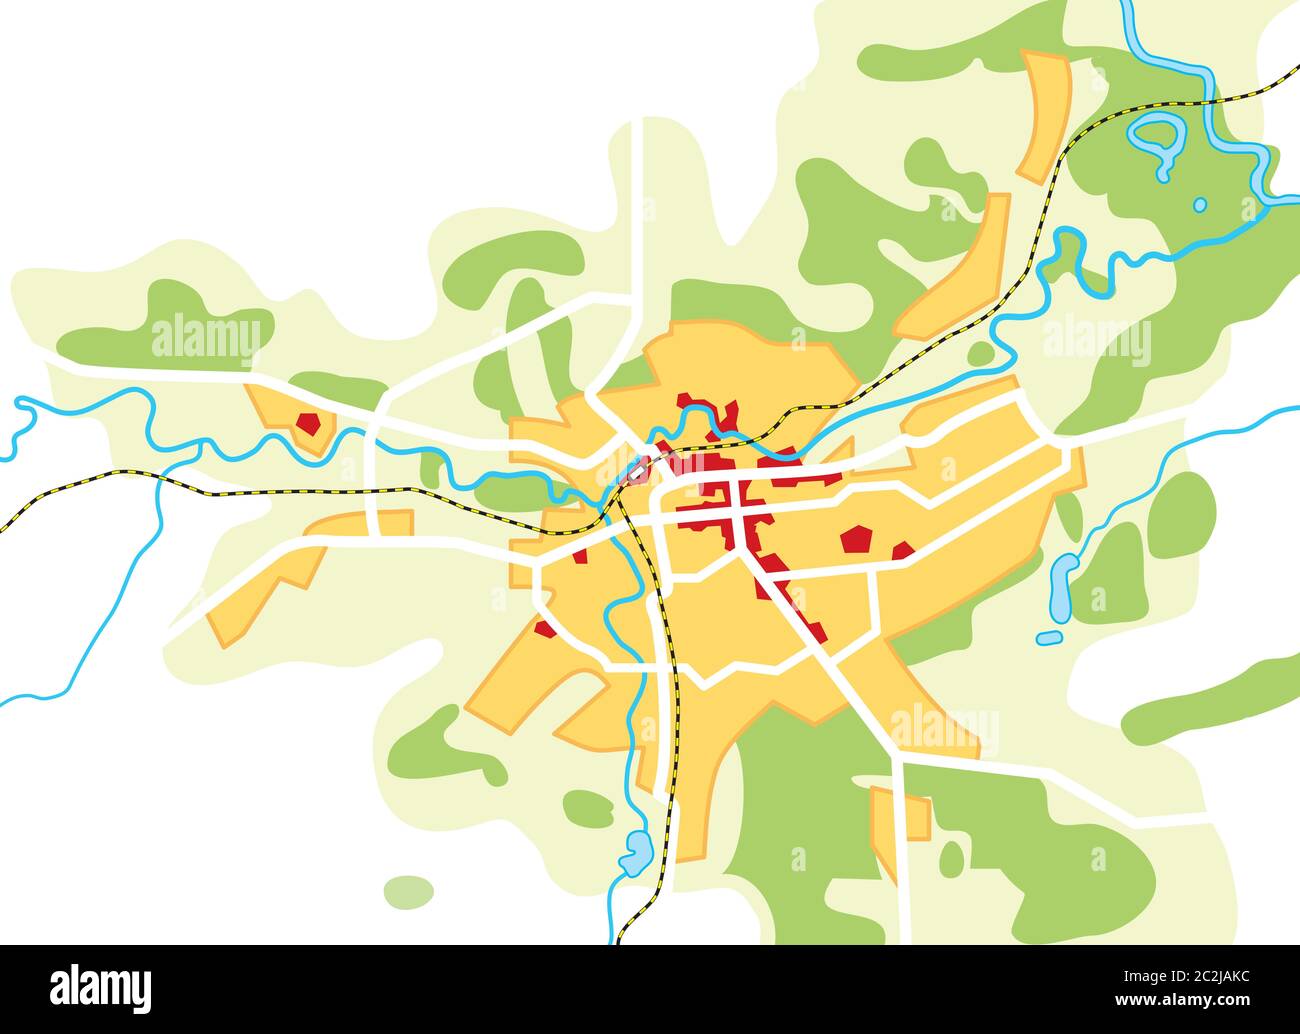 Carte de la ville. Lieu géographique, guide touristique, Route de Navigation graphique urbain. Banque D'Images